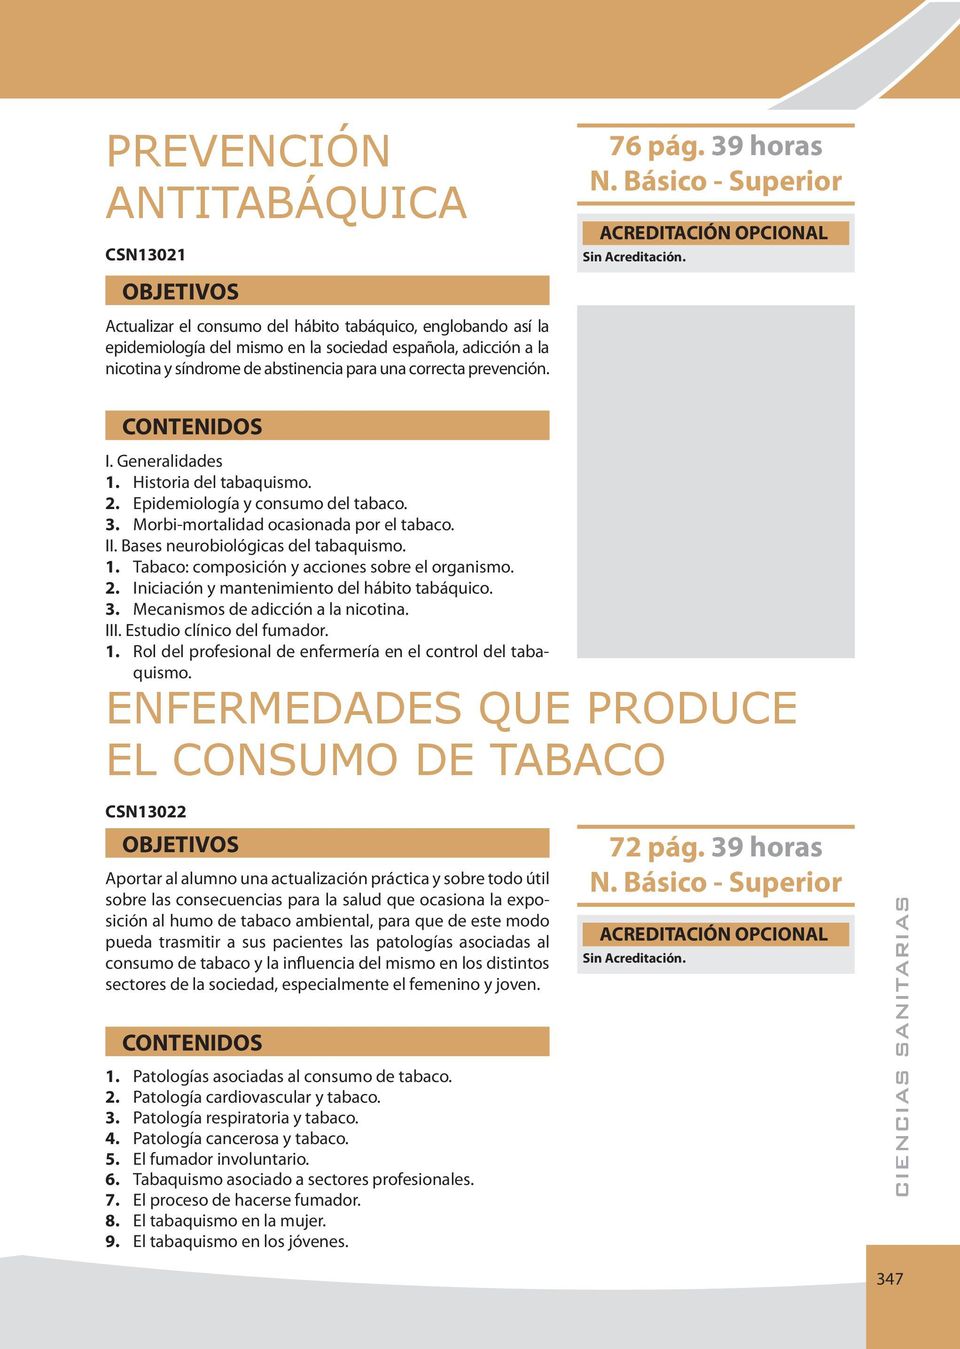 Bases neurobiológicas del tabaquismo. 1. Tabaco: composición y acciones sobre el organismo. 2. Iniciación y mantenimiento del hábito tabáquico. 3. Mecanismos de adicción a la nicotina. III.